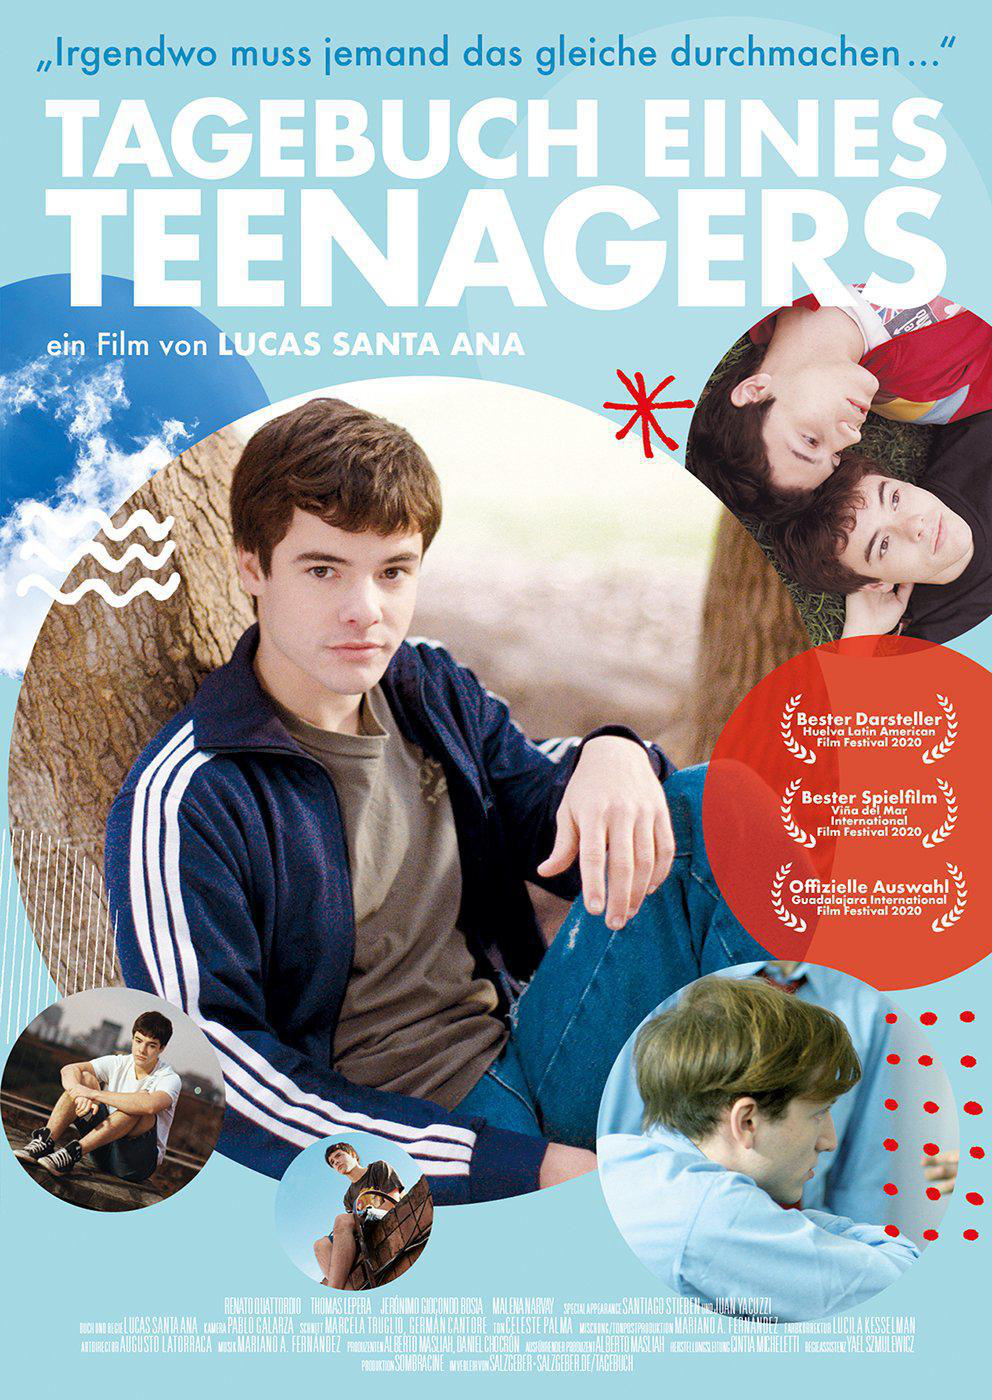 Tagebuch Teenagers eines DVD